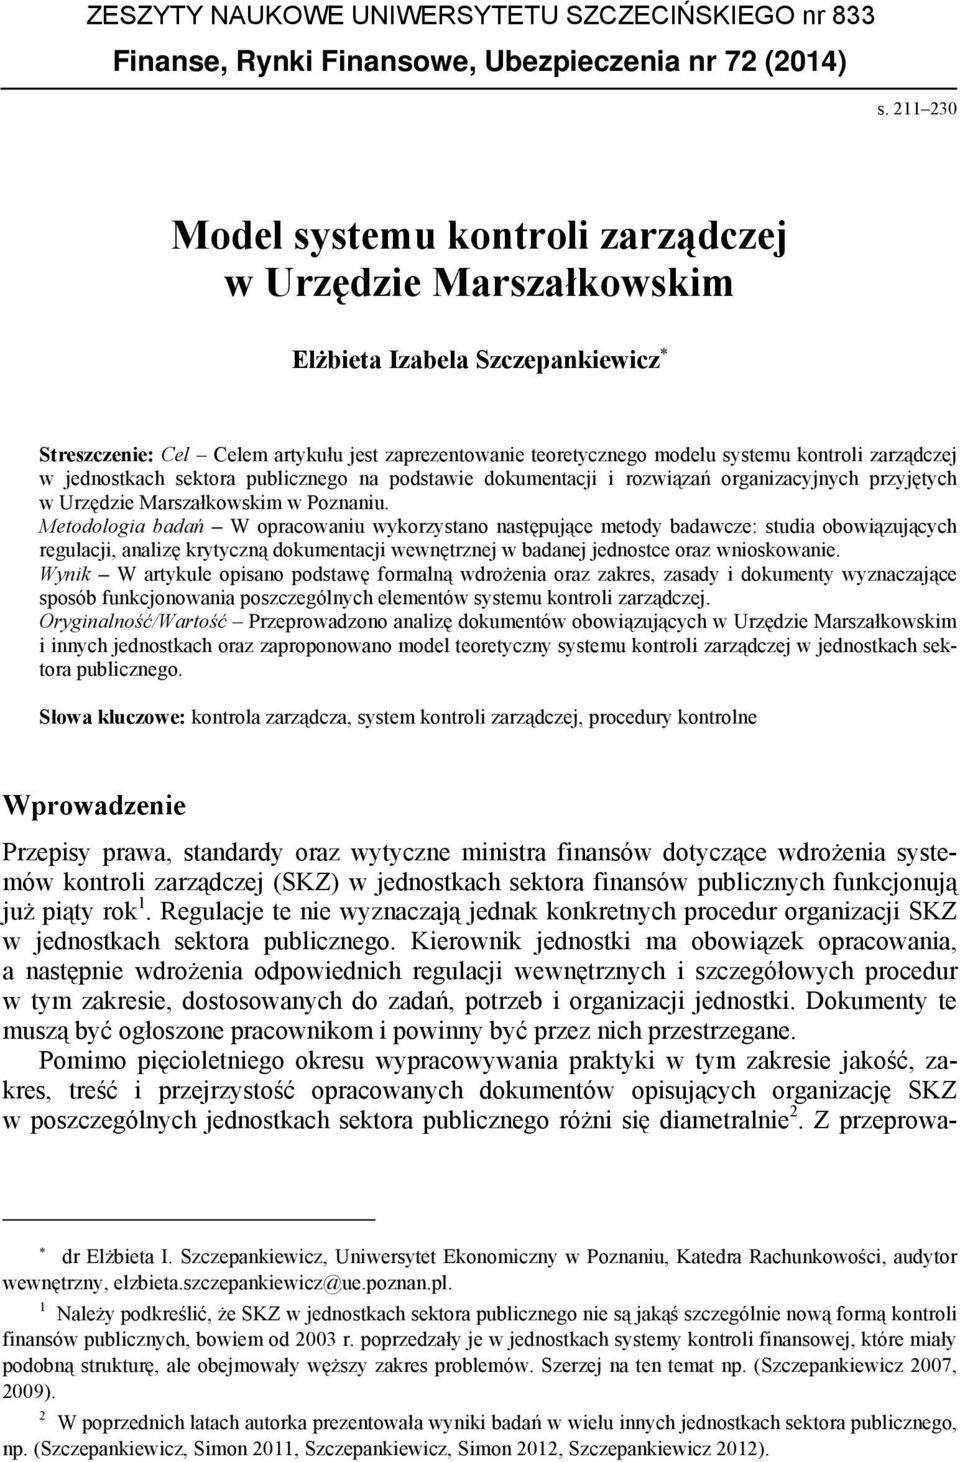 zarządczej w jednostkach sektora publicznego na podstawie dokumentacji i rozwiązań organizacyjnych przyjętych w Urzędzie Marszałkowskim w Poznaniu.